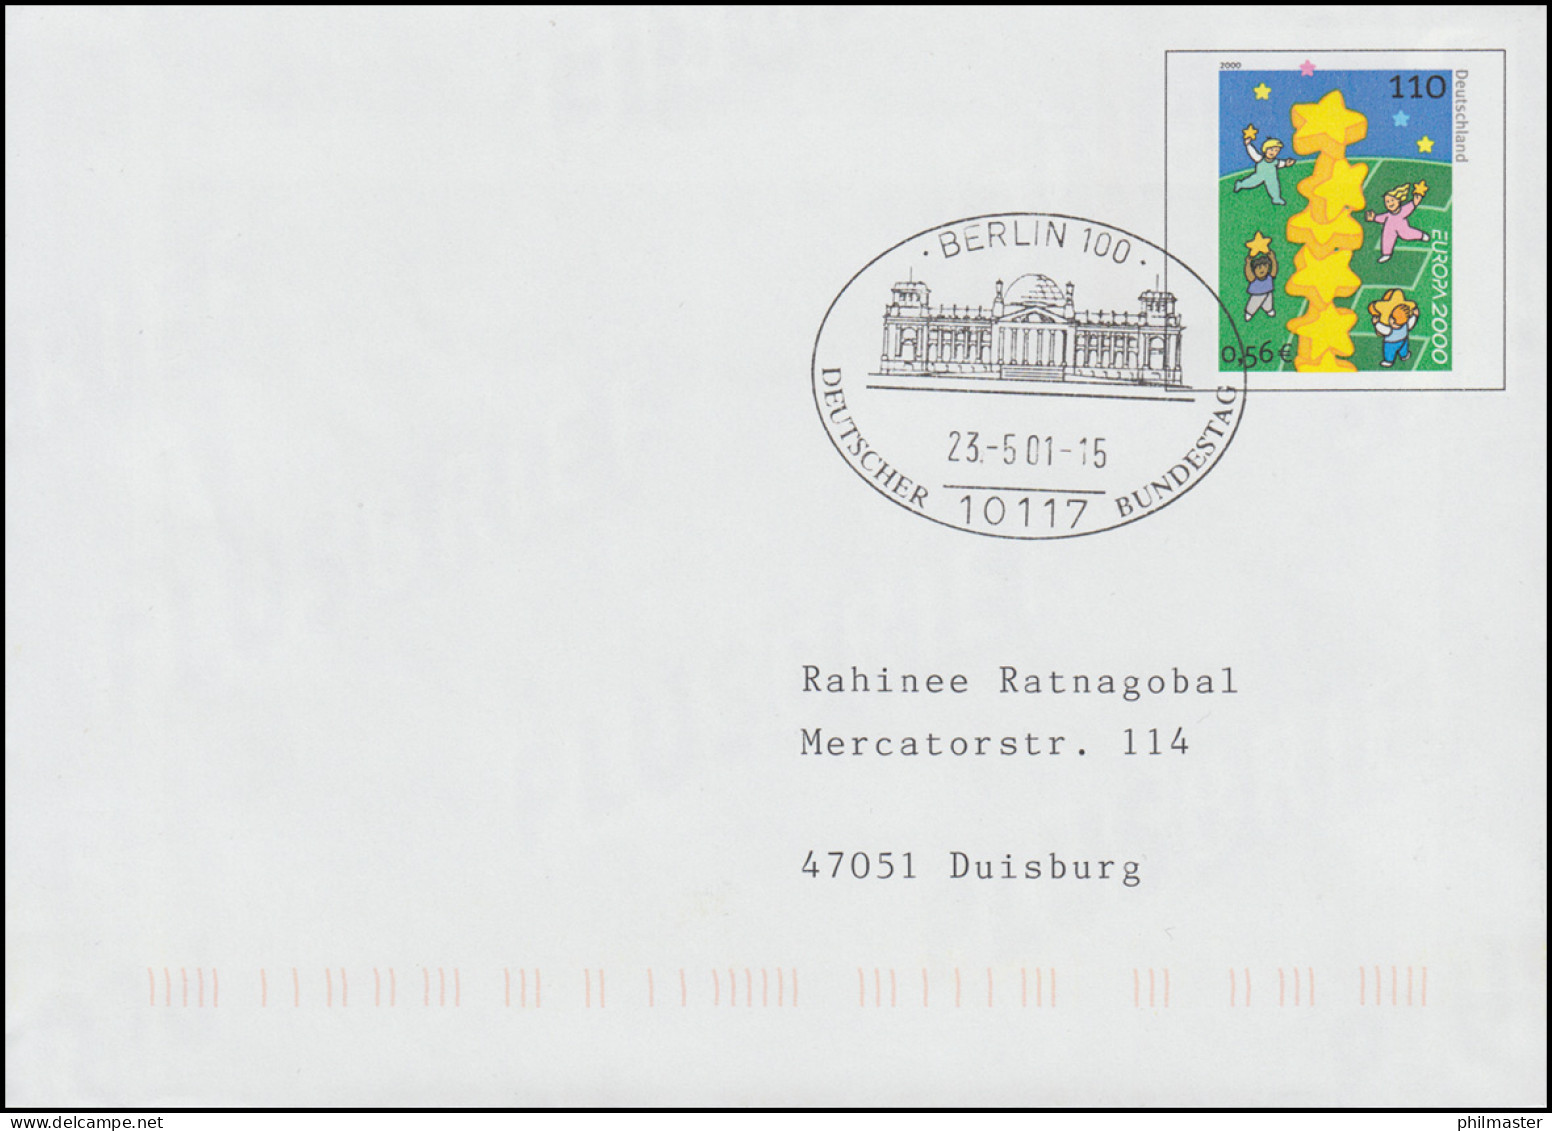 Werbeumschlag WU 3 - Ohne Karte, SSt BERLIN Deutscher Bundestag 2001 - Covers - Mint